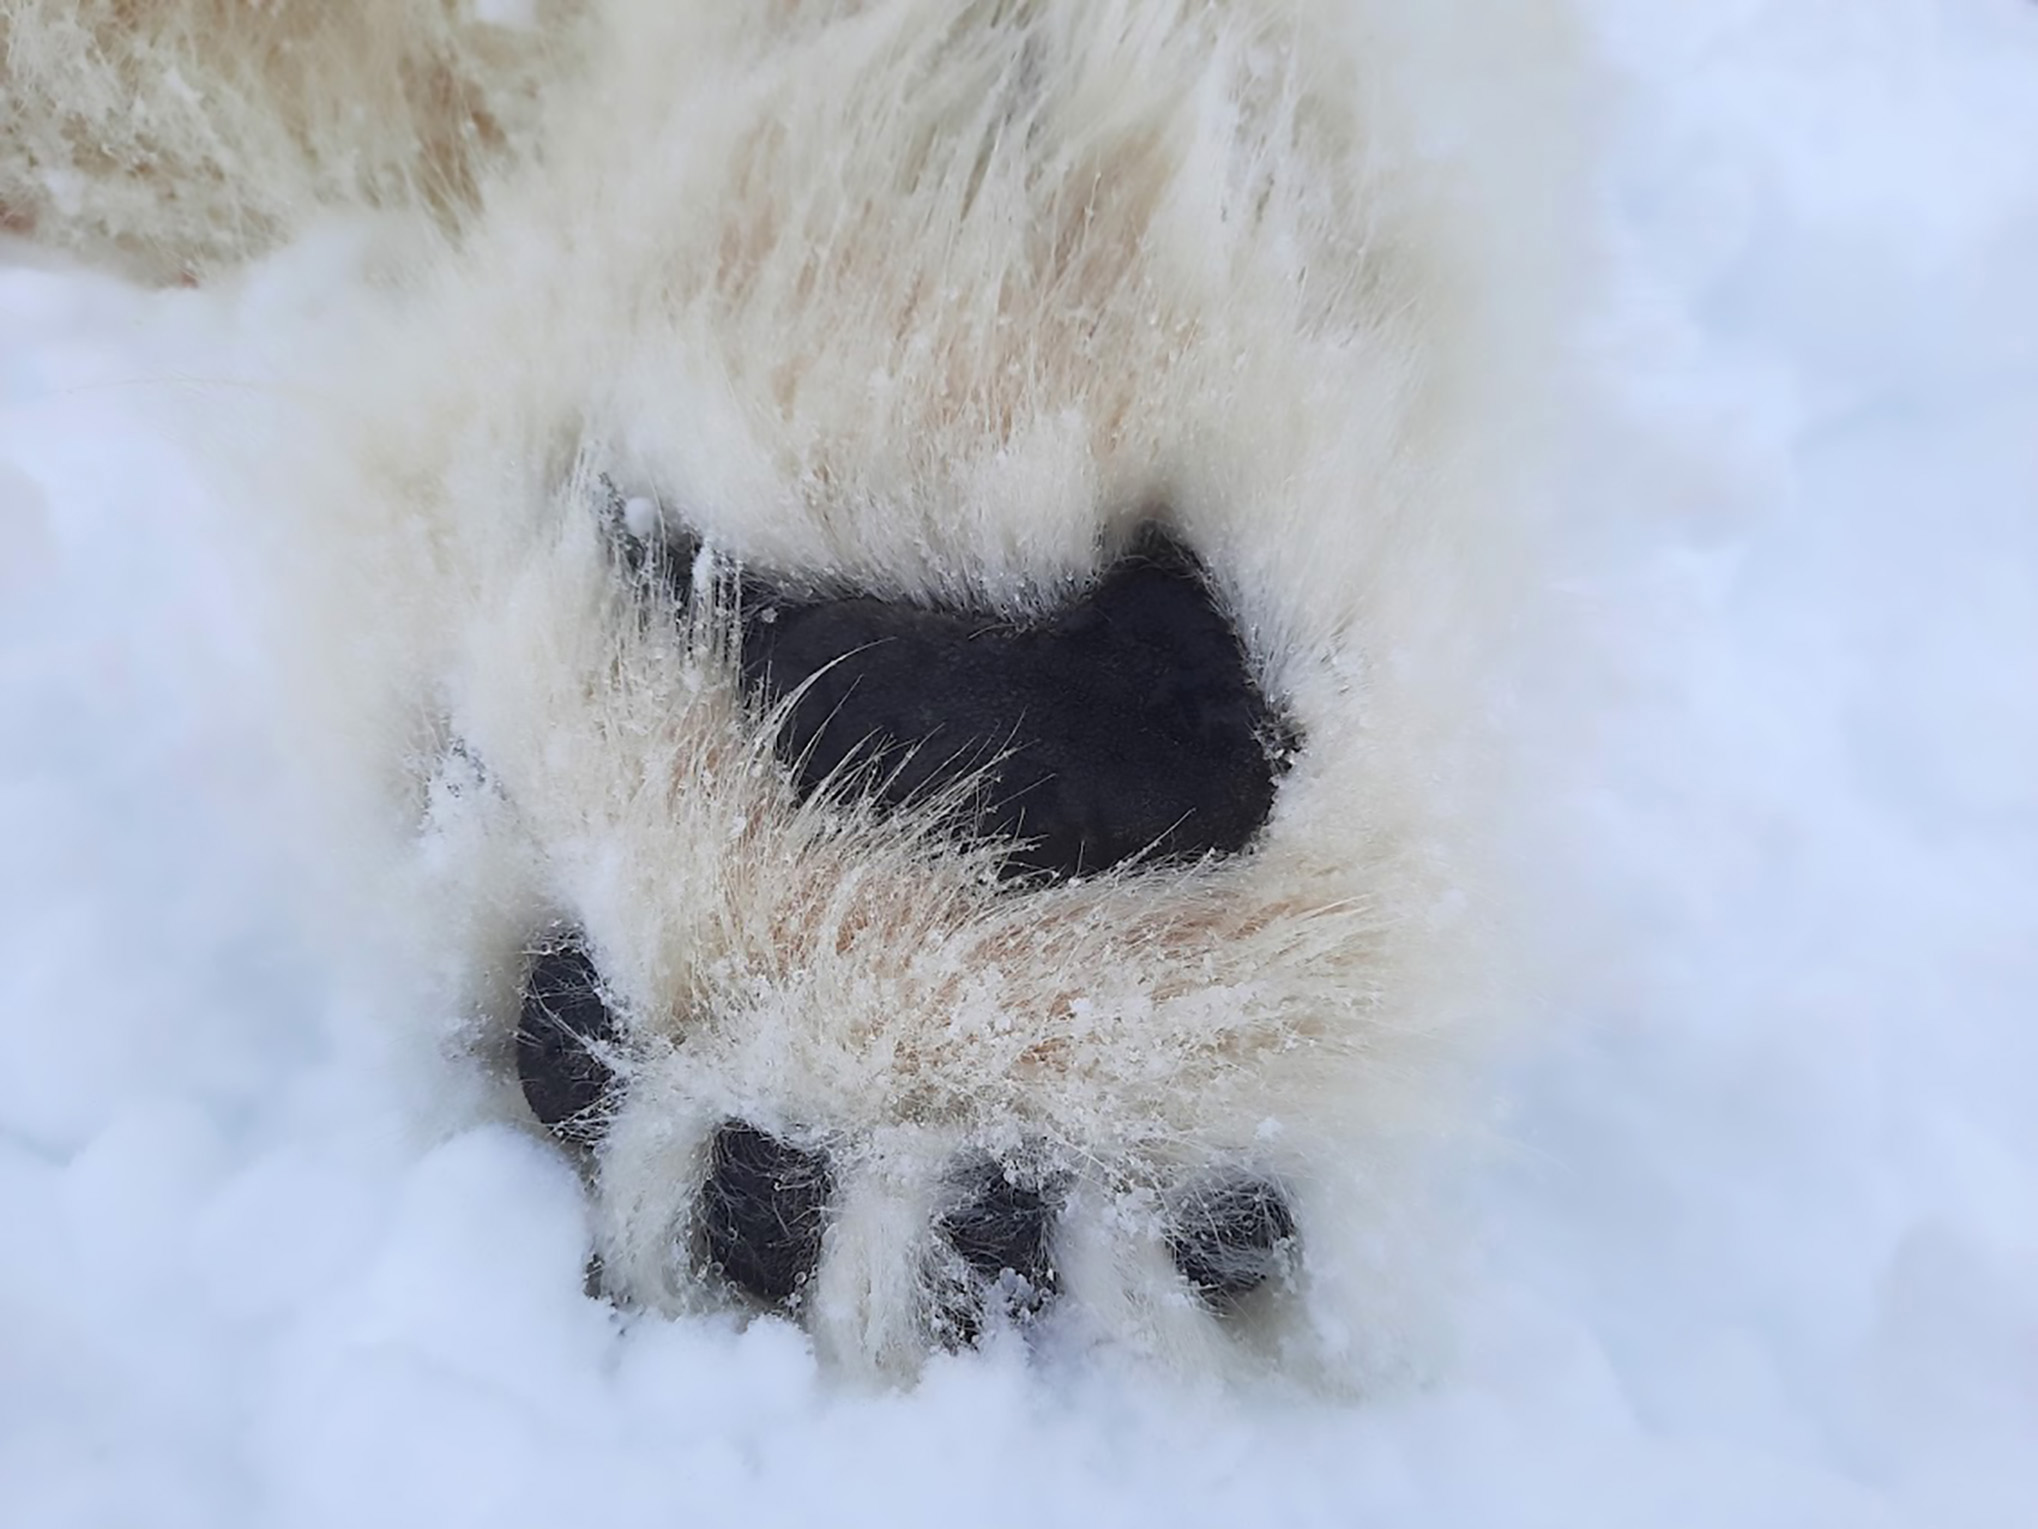 Polar bear hind foot